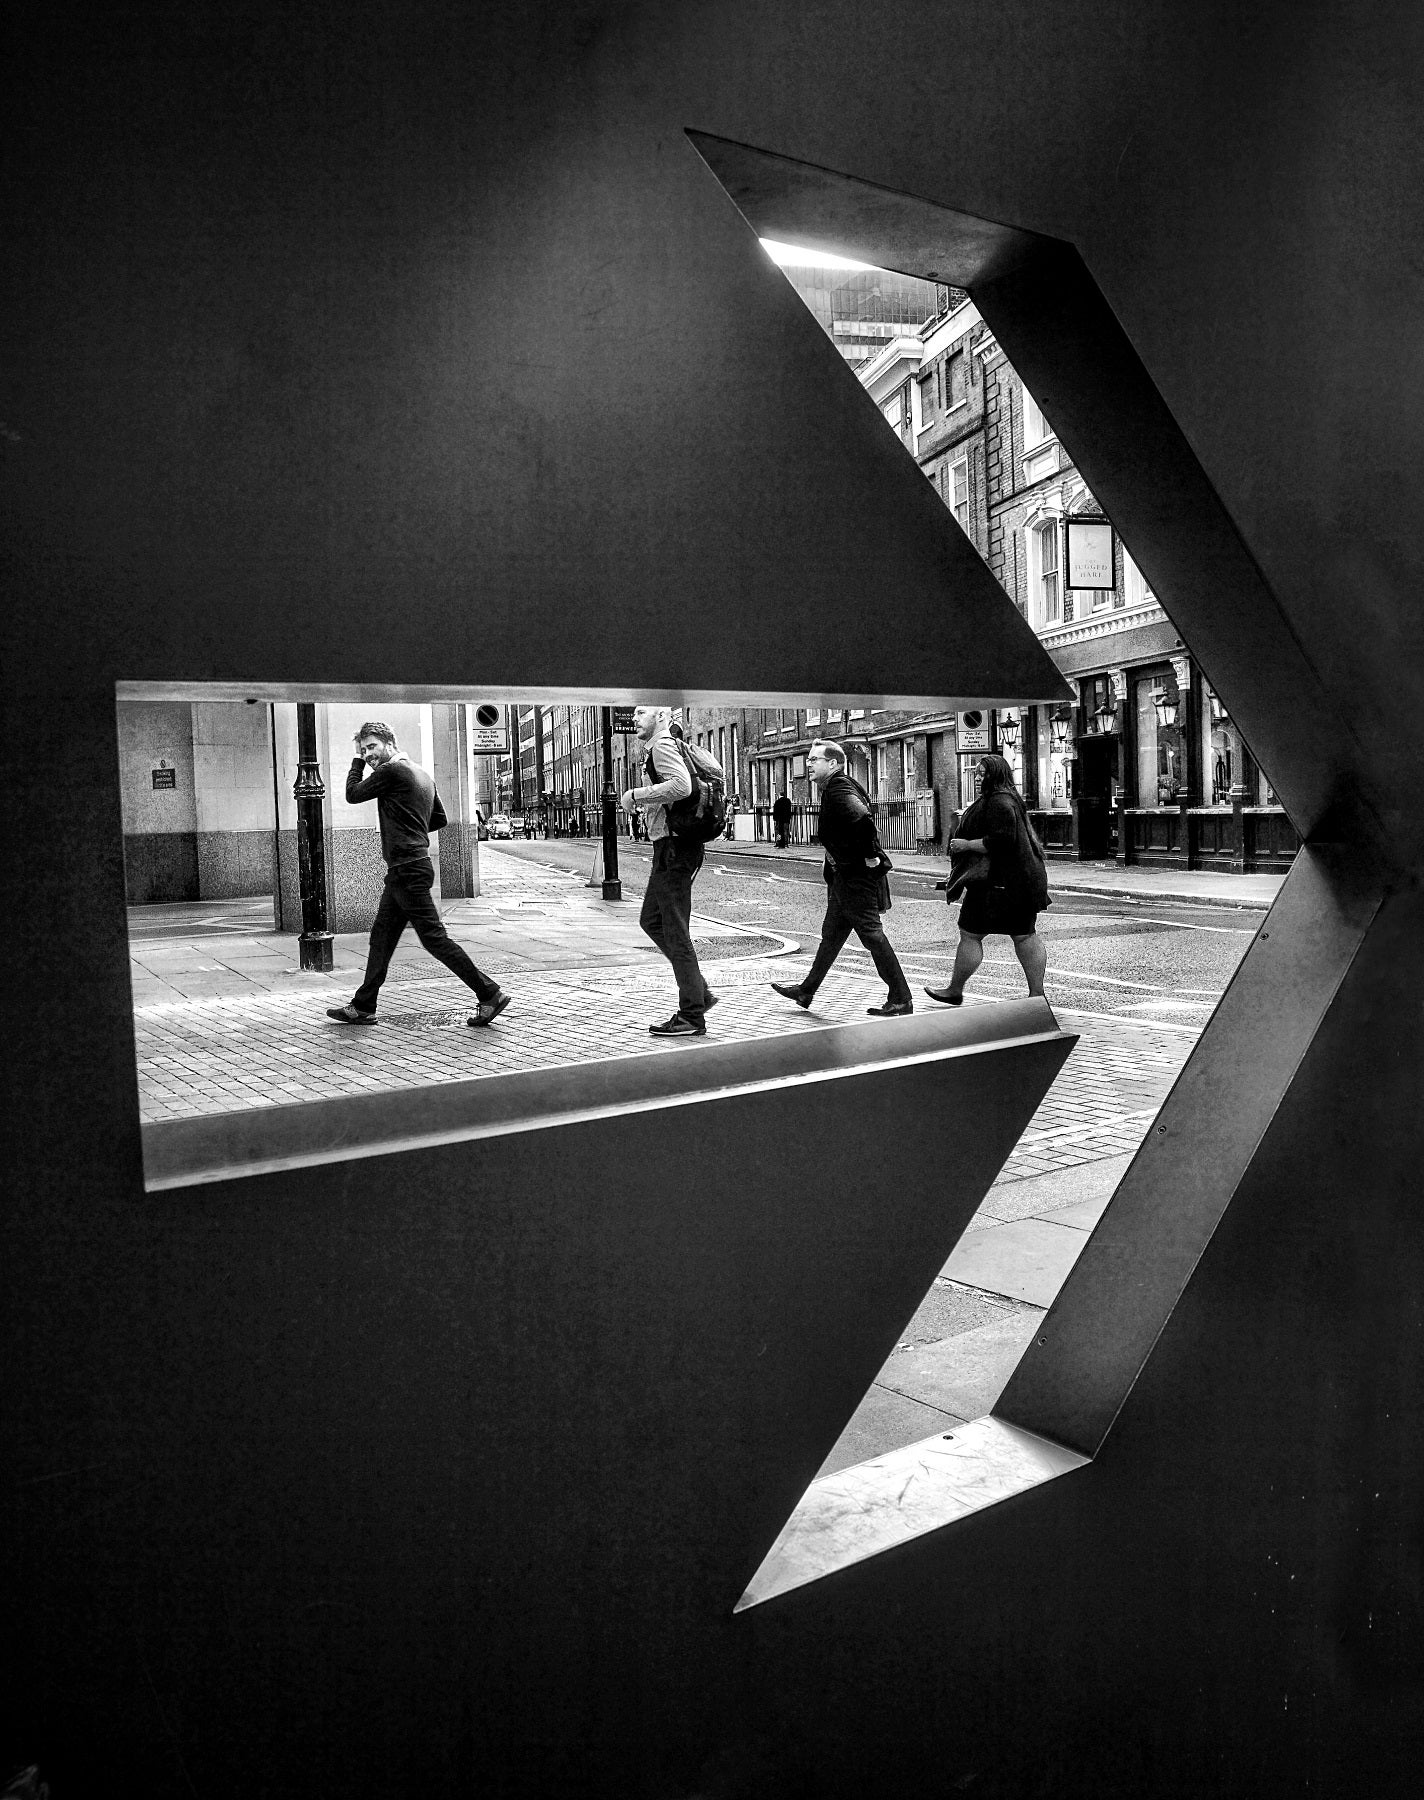 fotografia em preto e branco prêmio fotografia de rua